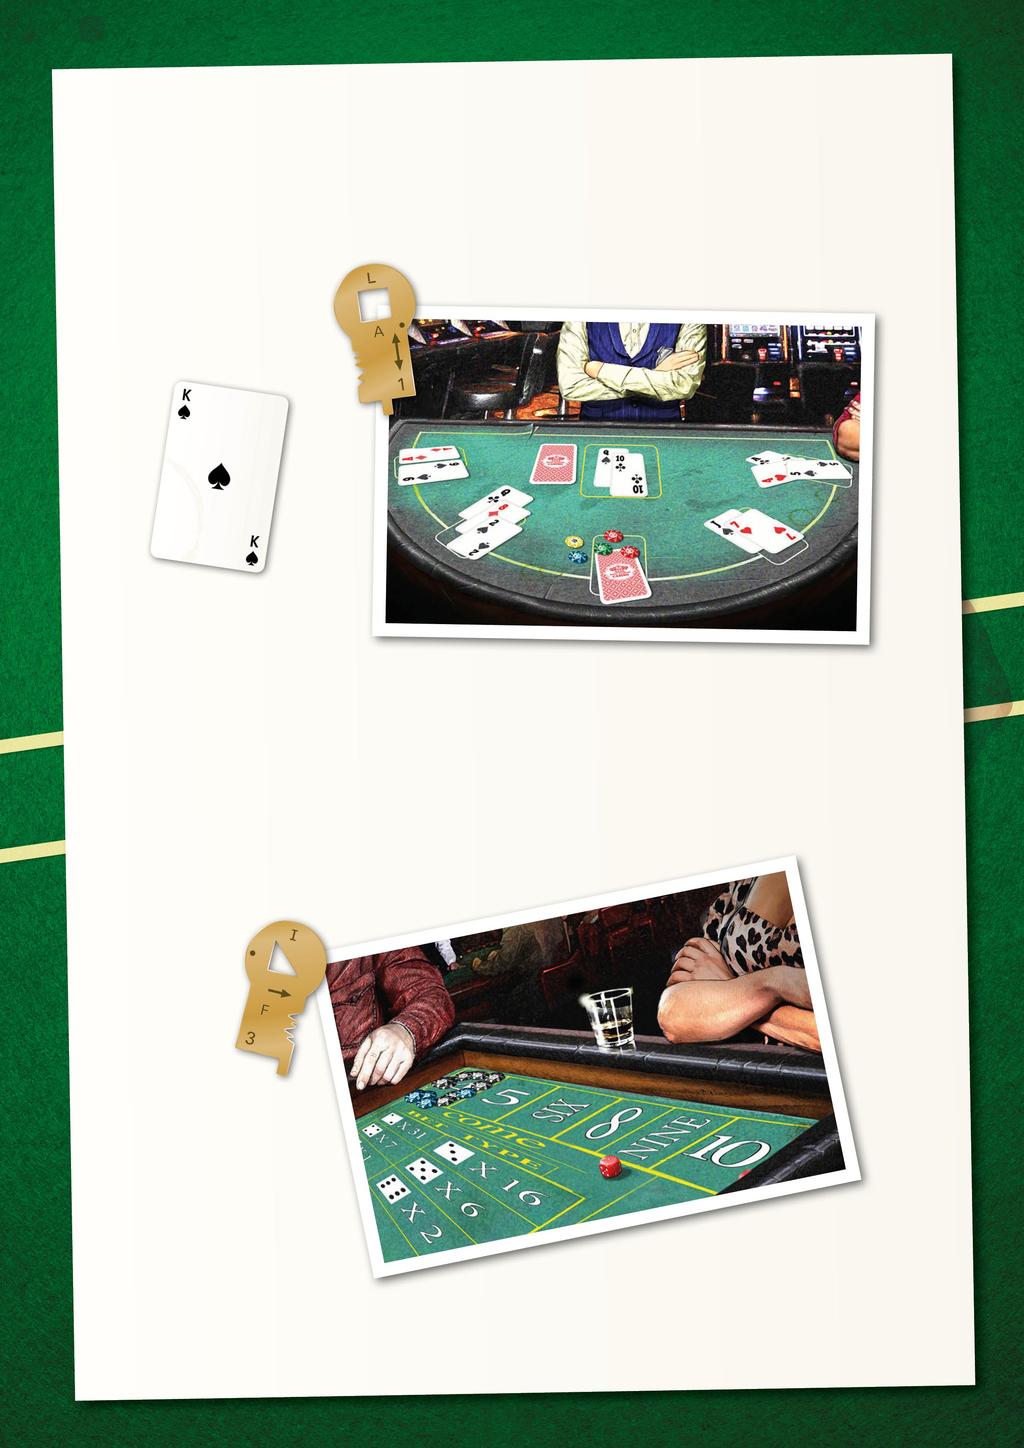 Blackjack Du har et kort i hånden, spar konge (= 10 poeng) og et skjult kort på bordet. Du kan finne verdien av kortet på baksiden av croupieren.